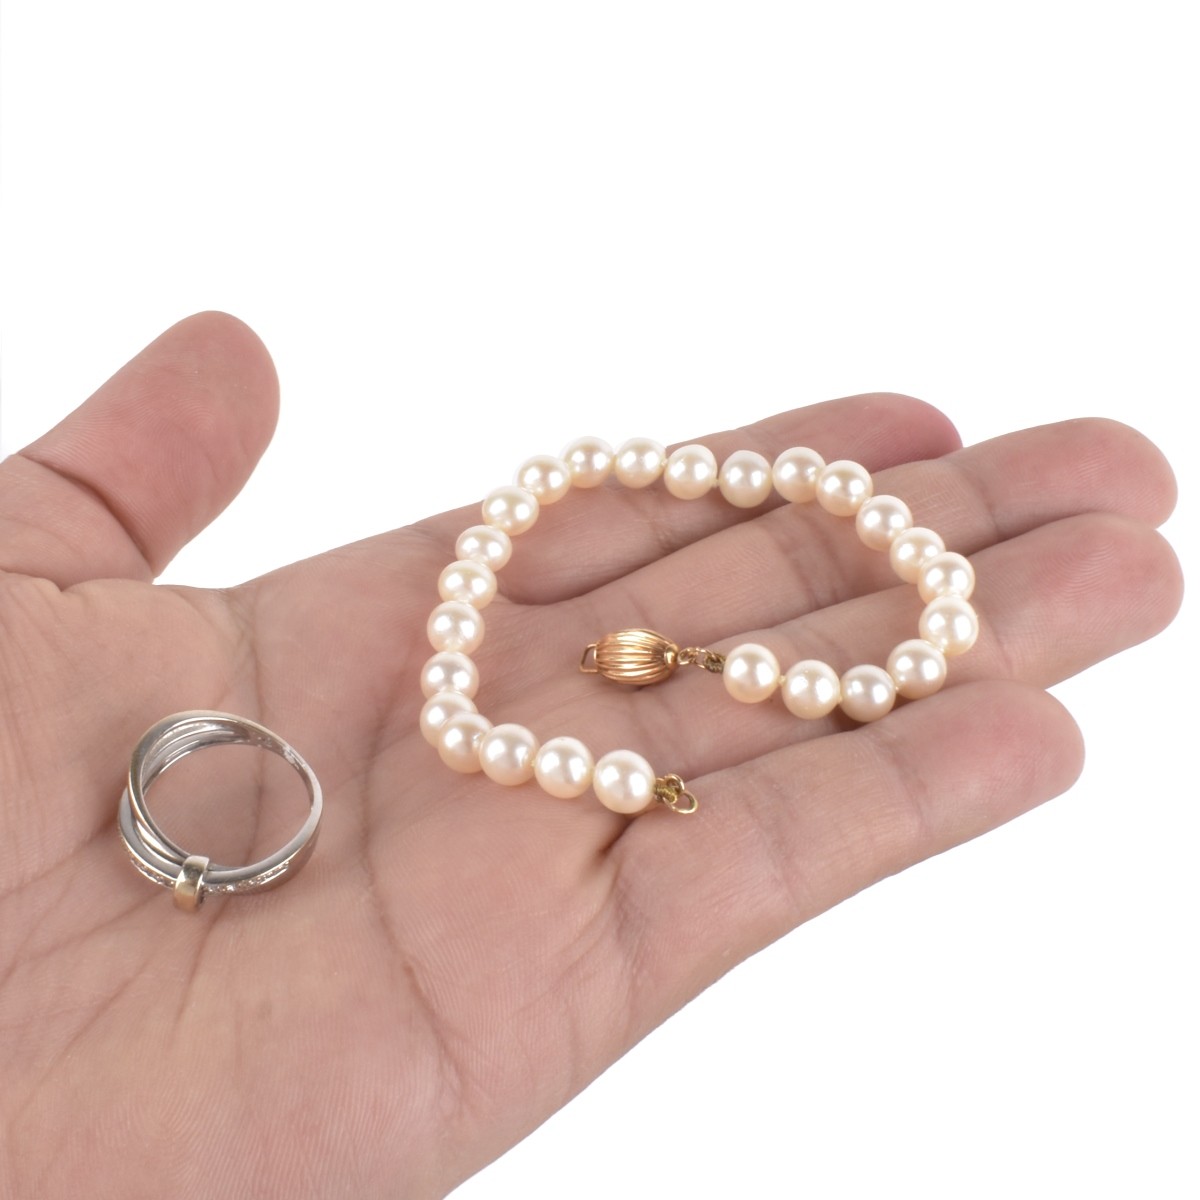 Pearl and 14K Bracelet, 18K Ring